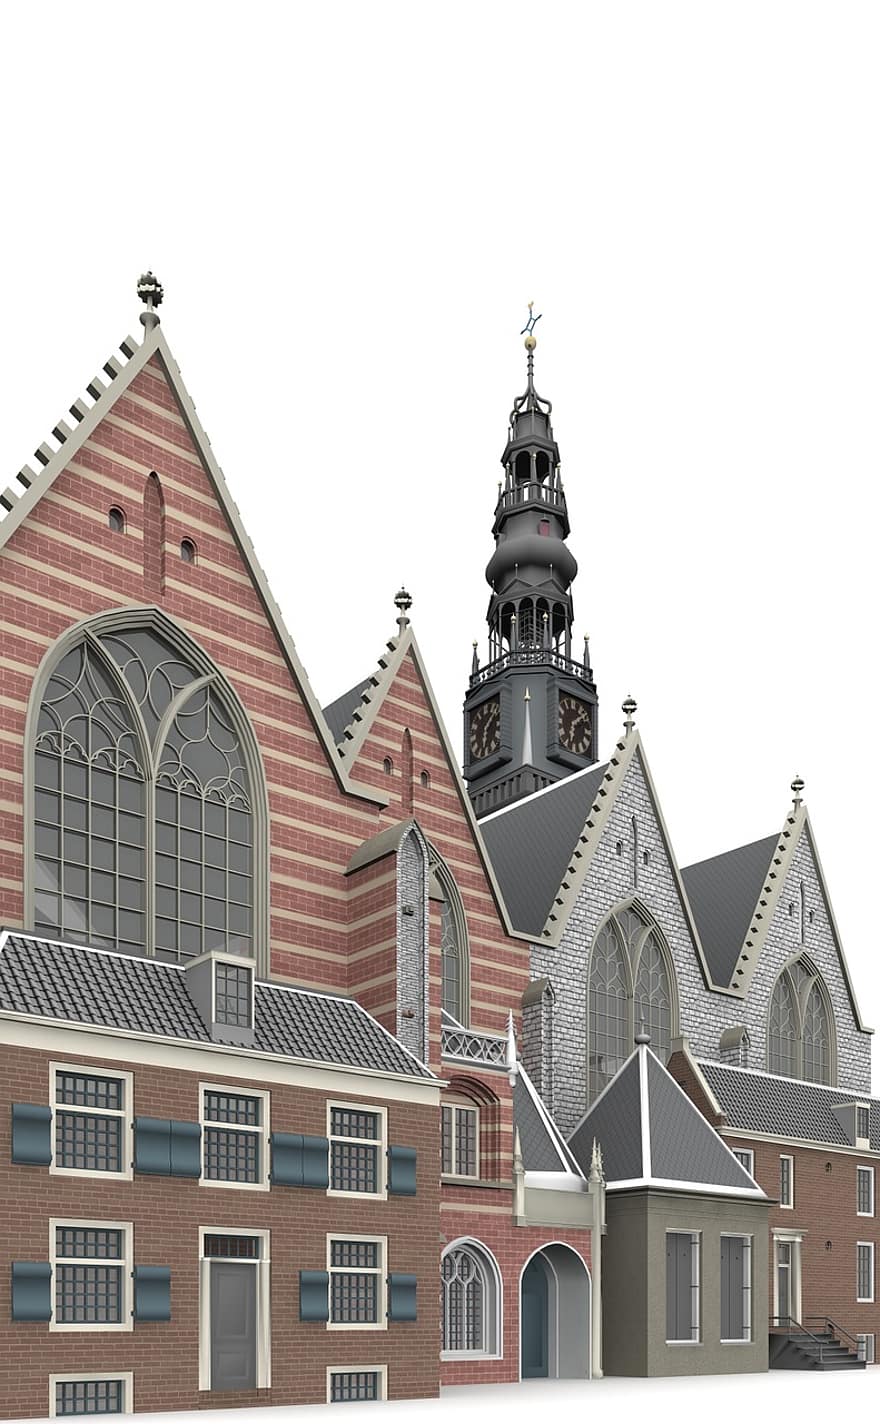 Oudé, Kerk, amsterdam, architecture, bâtiment, église, lieux d'intérêt, historiquement, touristes, attraction, point de repère